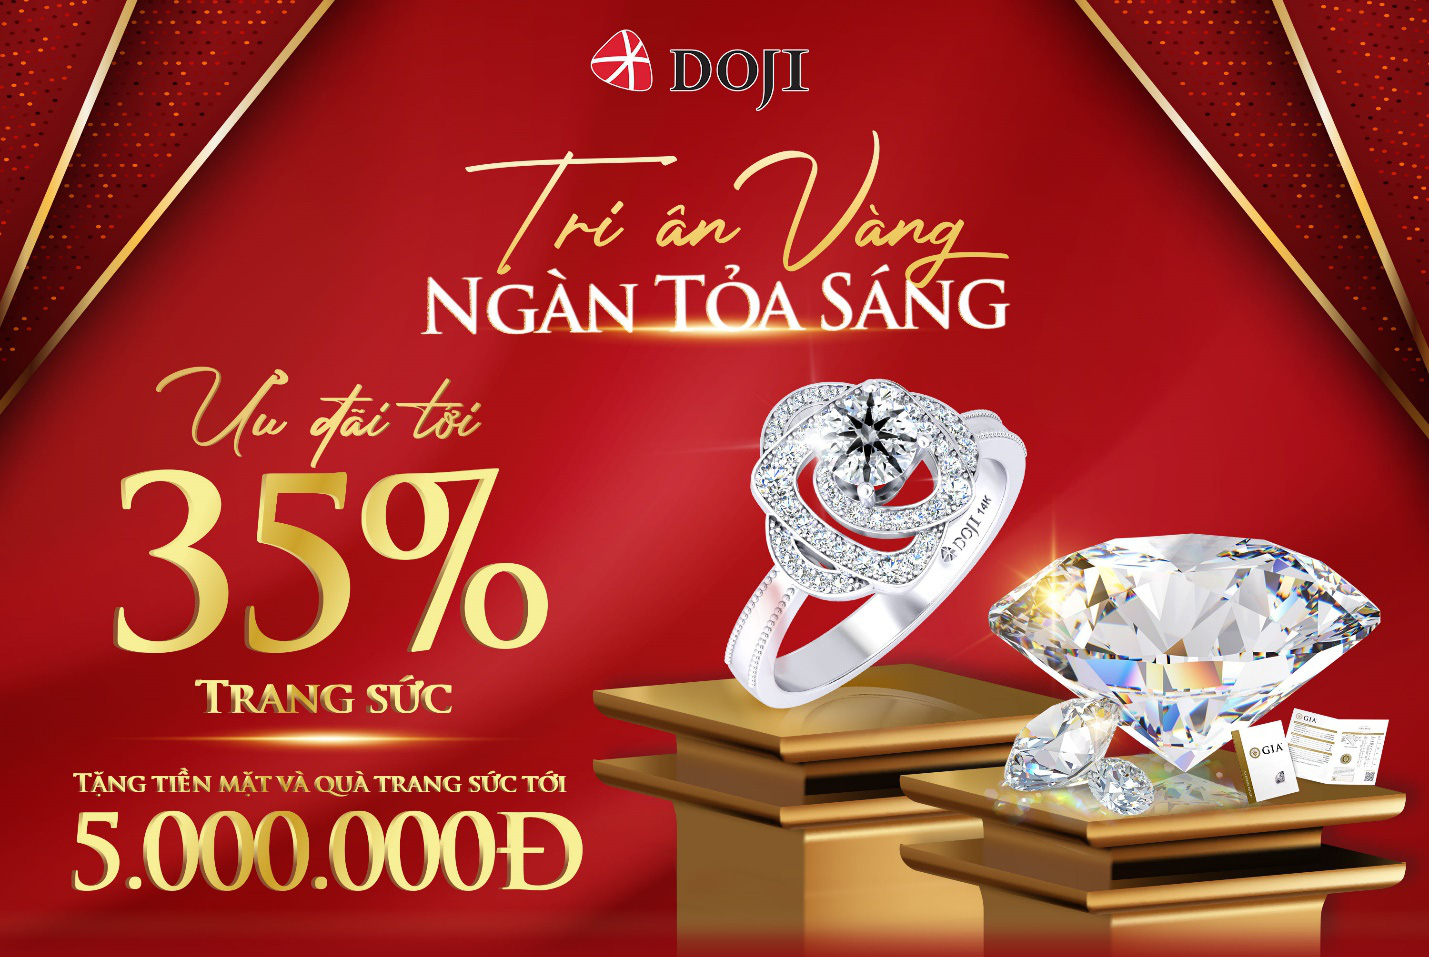 DOJI - Thương hiệu trang sức hàng đầu Việt Nam tung siêu ưu đãi tới 35% - Ảnh 1.